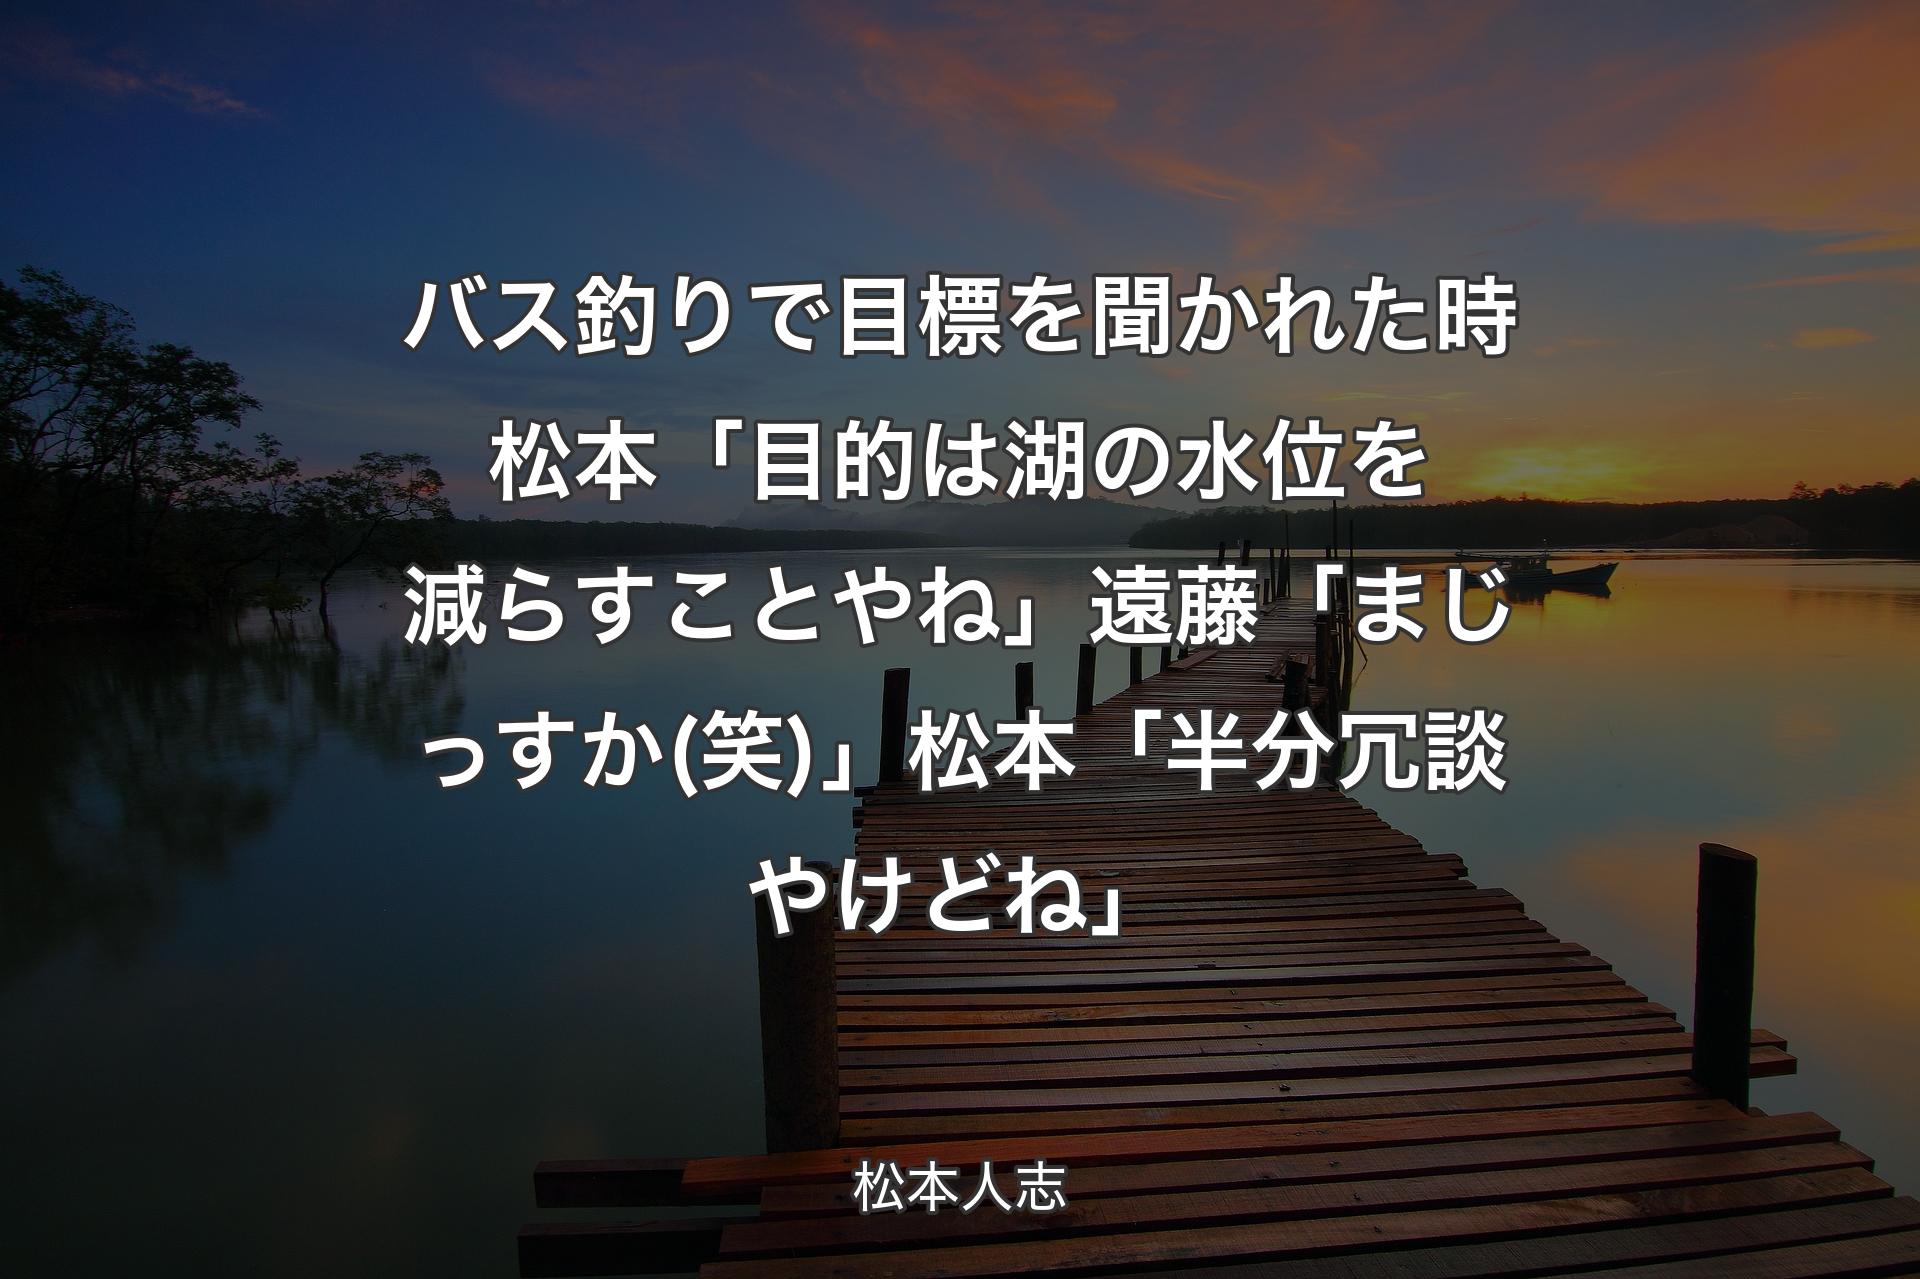 バス釣りで目標を聞かれた時 松本「目的は湖の水位を減らすことやね」遠藤「まじっすか(笑)」松本「半分冗談やけどね」 - 松本人志